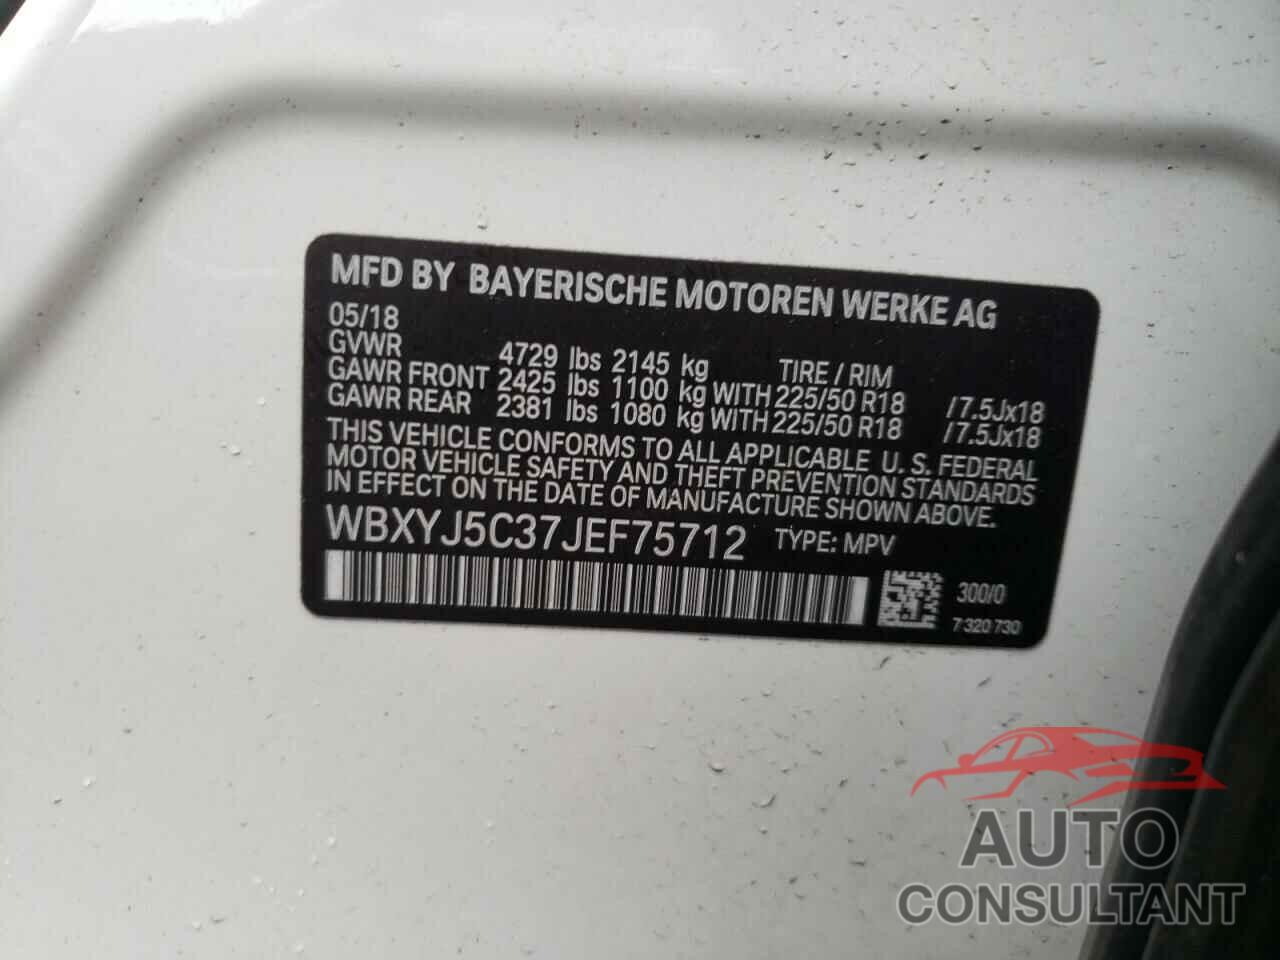 BMW X2 2018 - WBXYJ5C37JEF75712